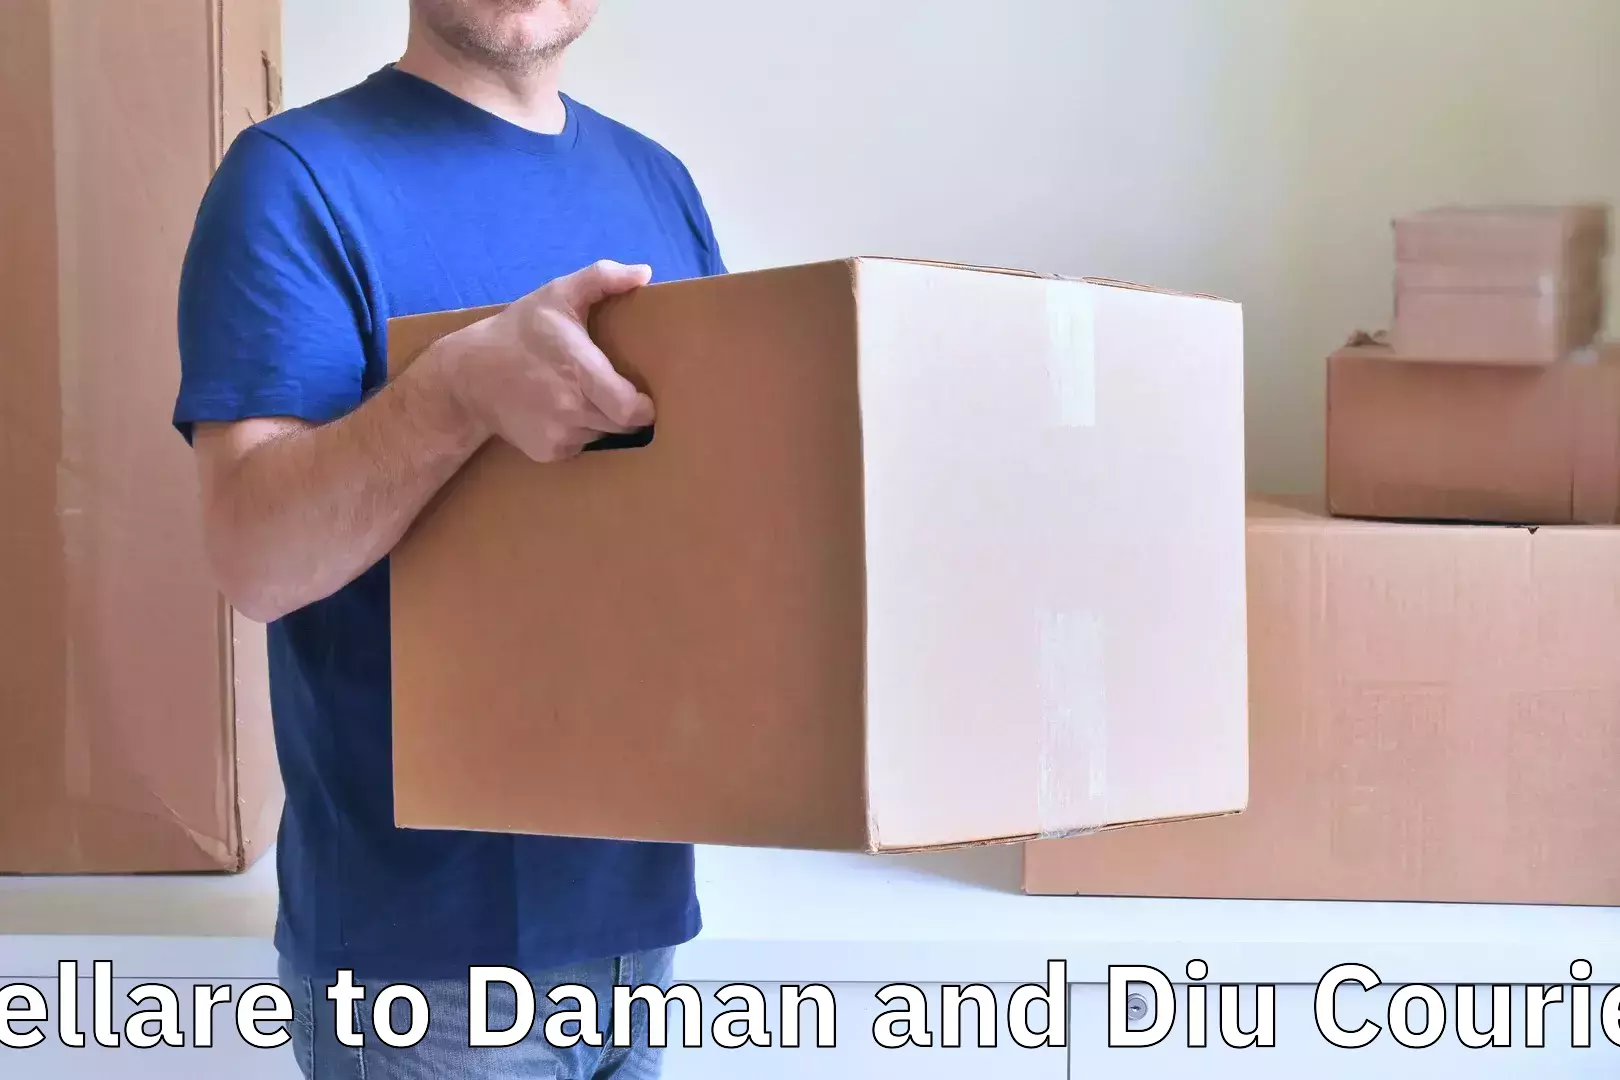 Baggage shipping logistics in Yellare to Daman and Diu